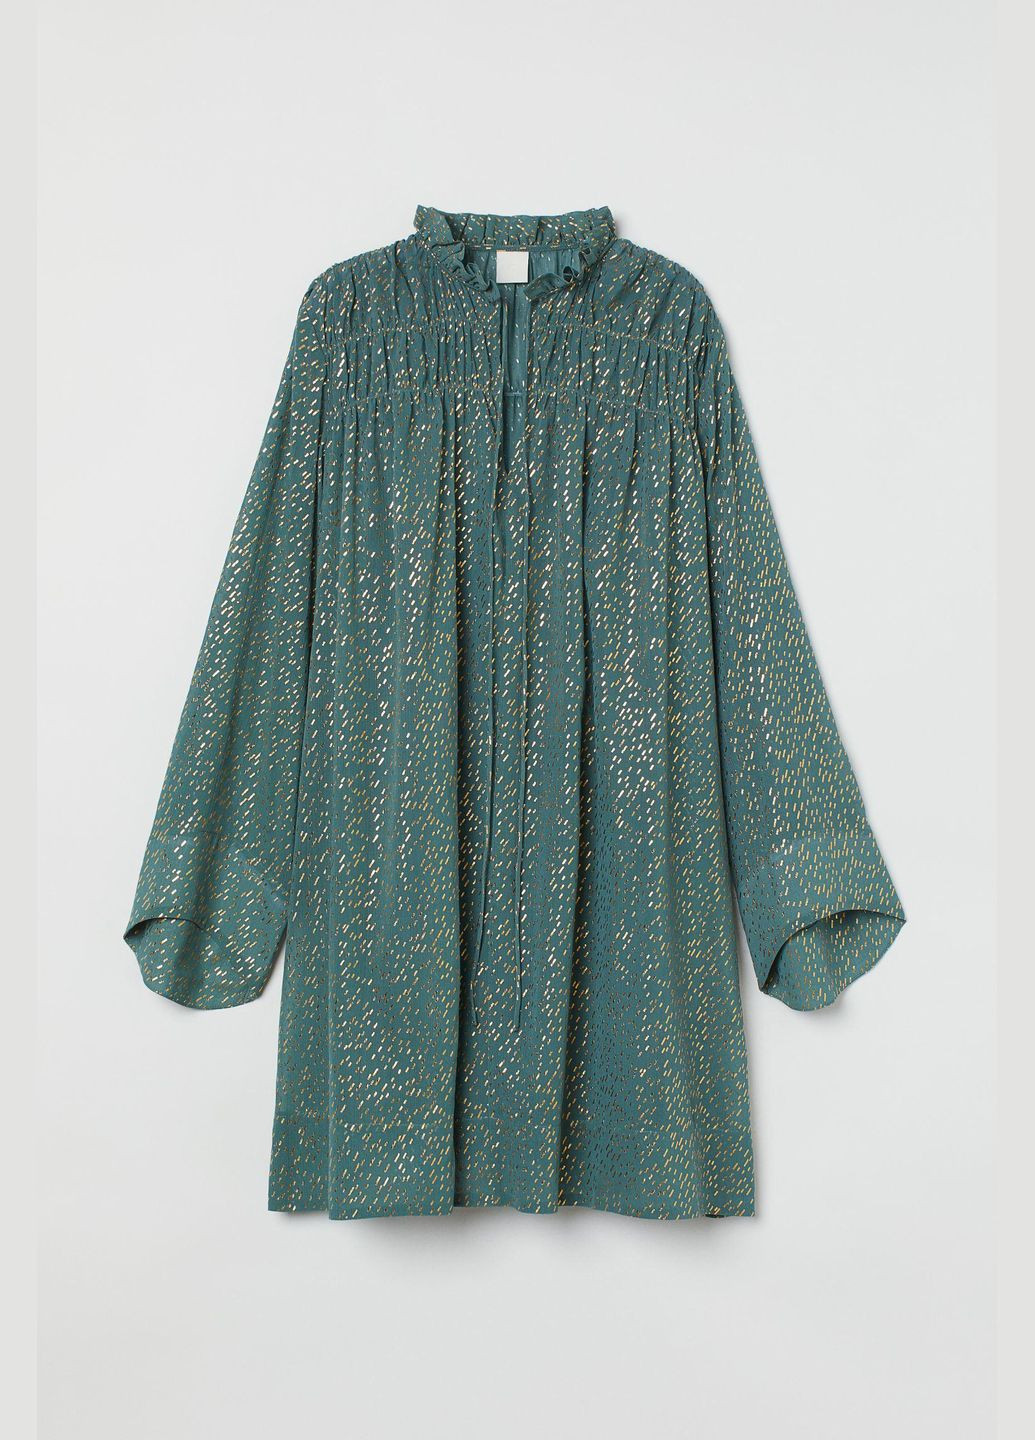 Мятное платье демисезон,мятный в узоры, H&M